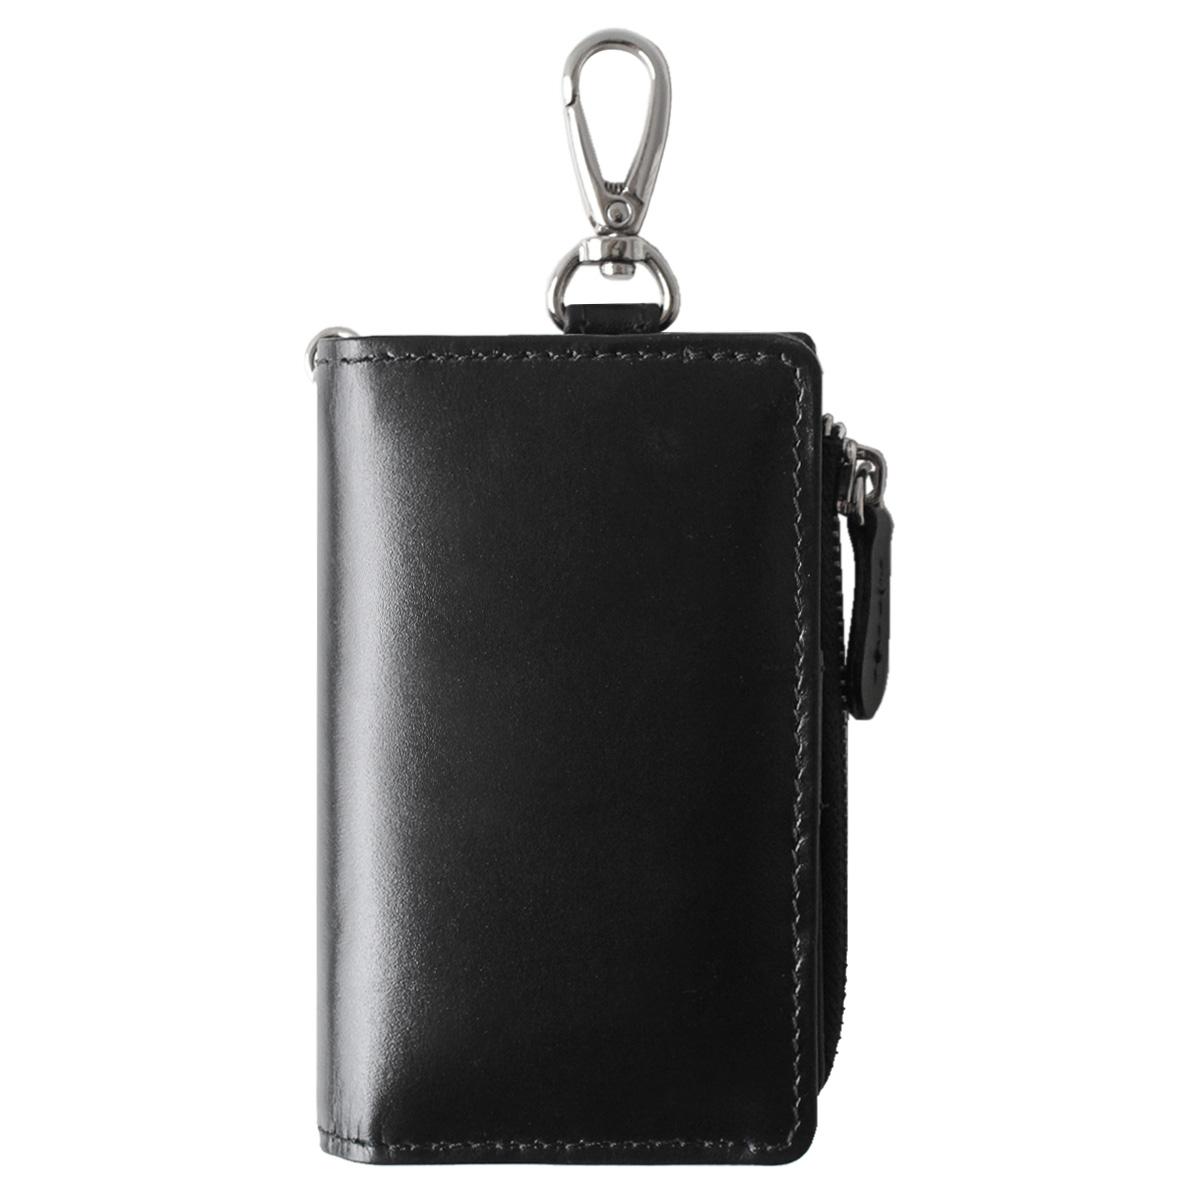 キーケース メンズ レディース 本革 レザー L字ファスナー キーケース財布一体型 小銭入れ カードケース コインケース ミニ財布